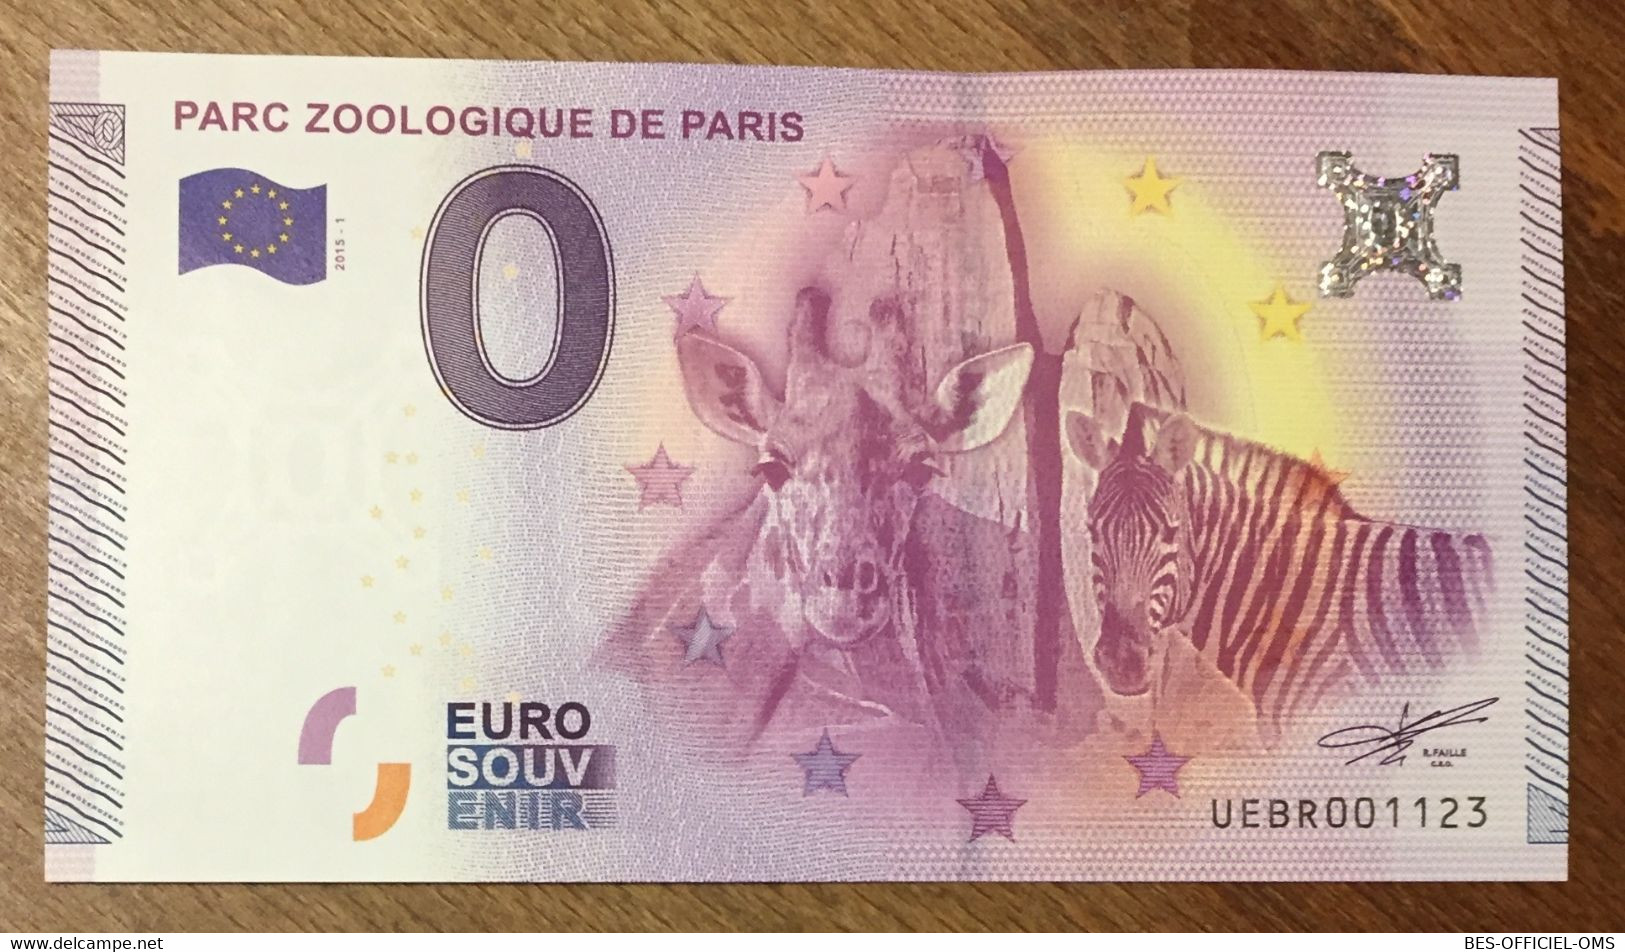 2015 BILLET 0 EURO SOUVENIR DPT 75 PARC ZOOLOGIQUE DE PARIS ZERO 0 EURO SCHEIN BANKNOTE PAPER MONEY - Private Proofs / Unofficial